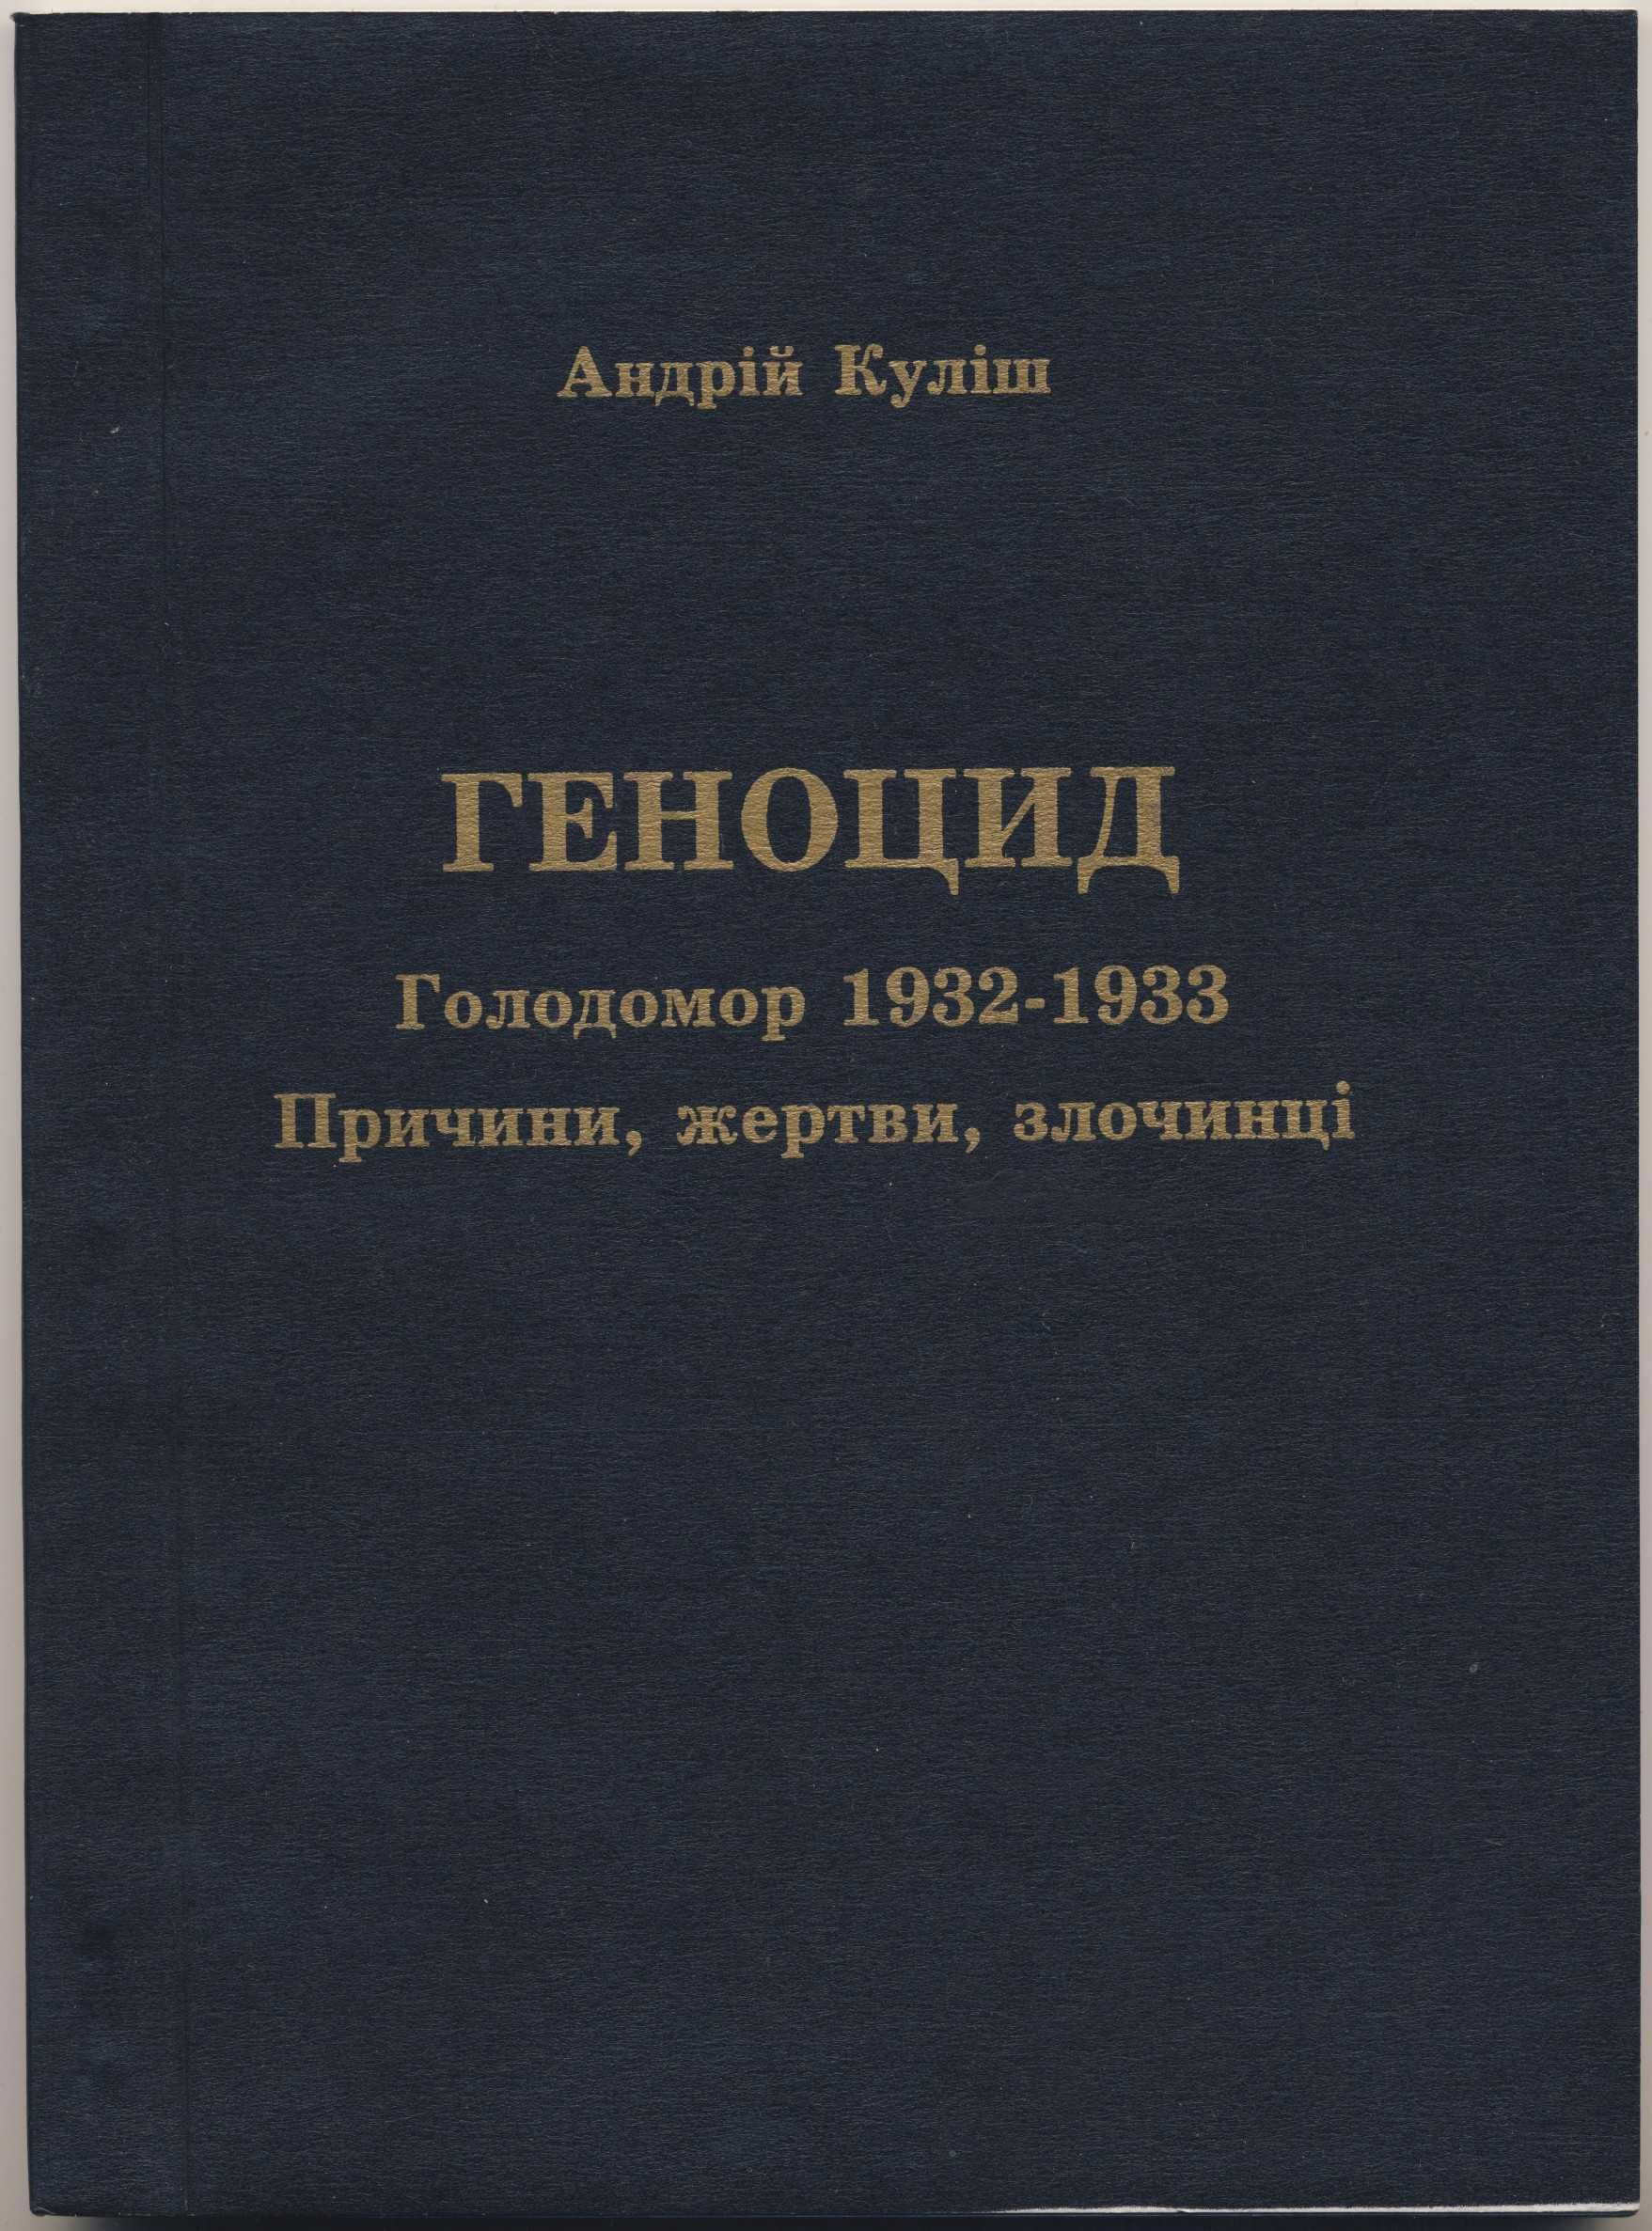 Історія України, 8 книг